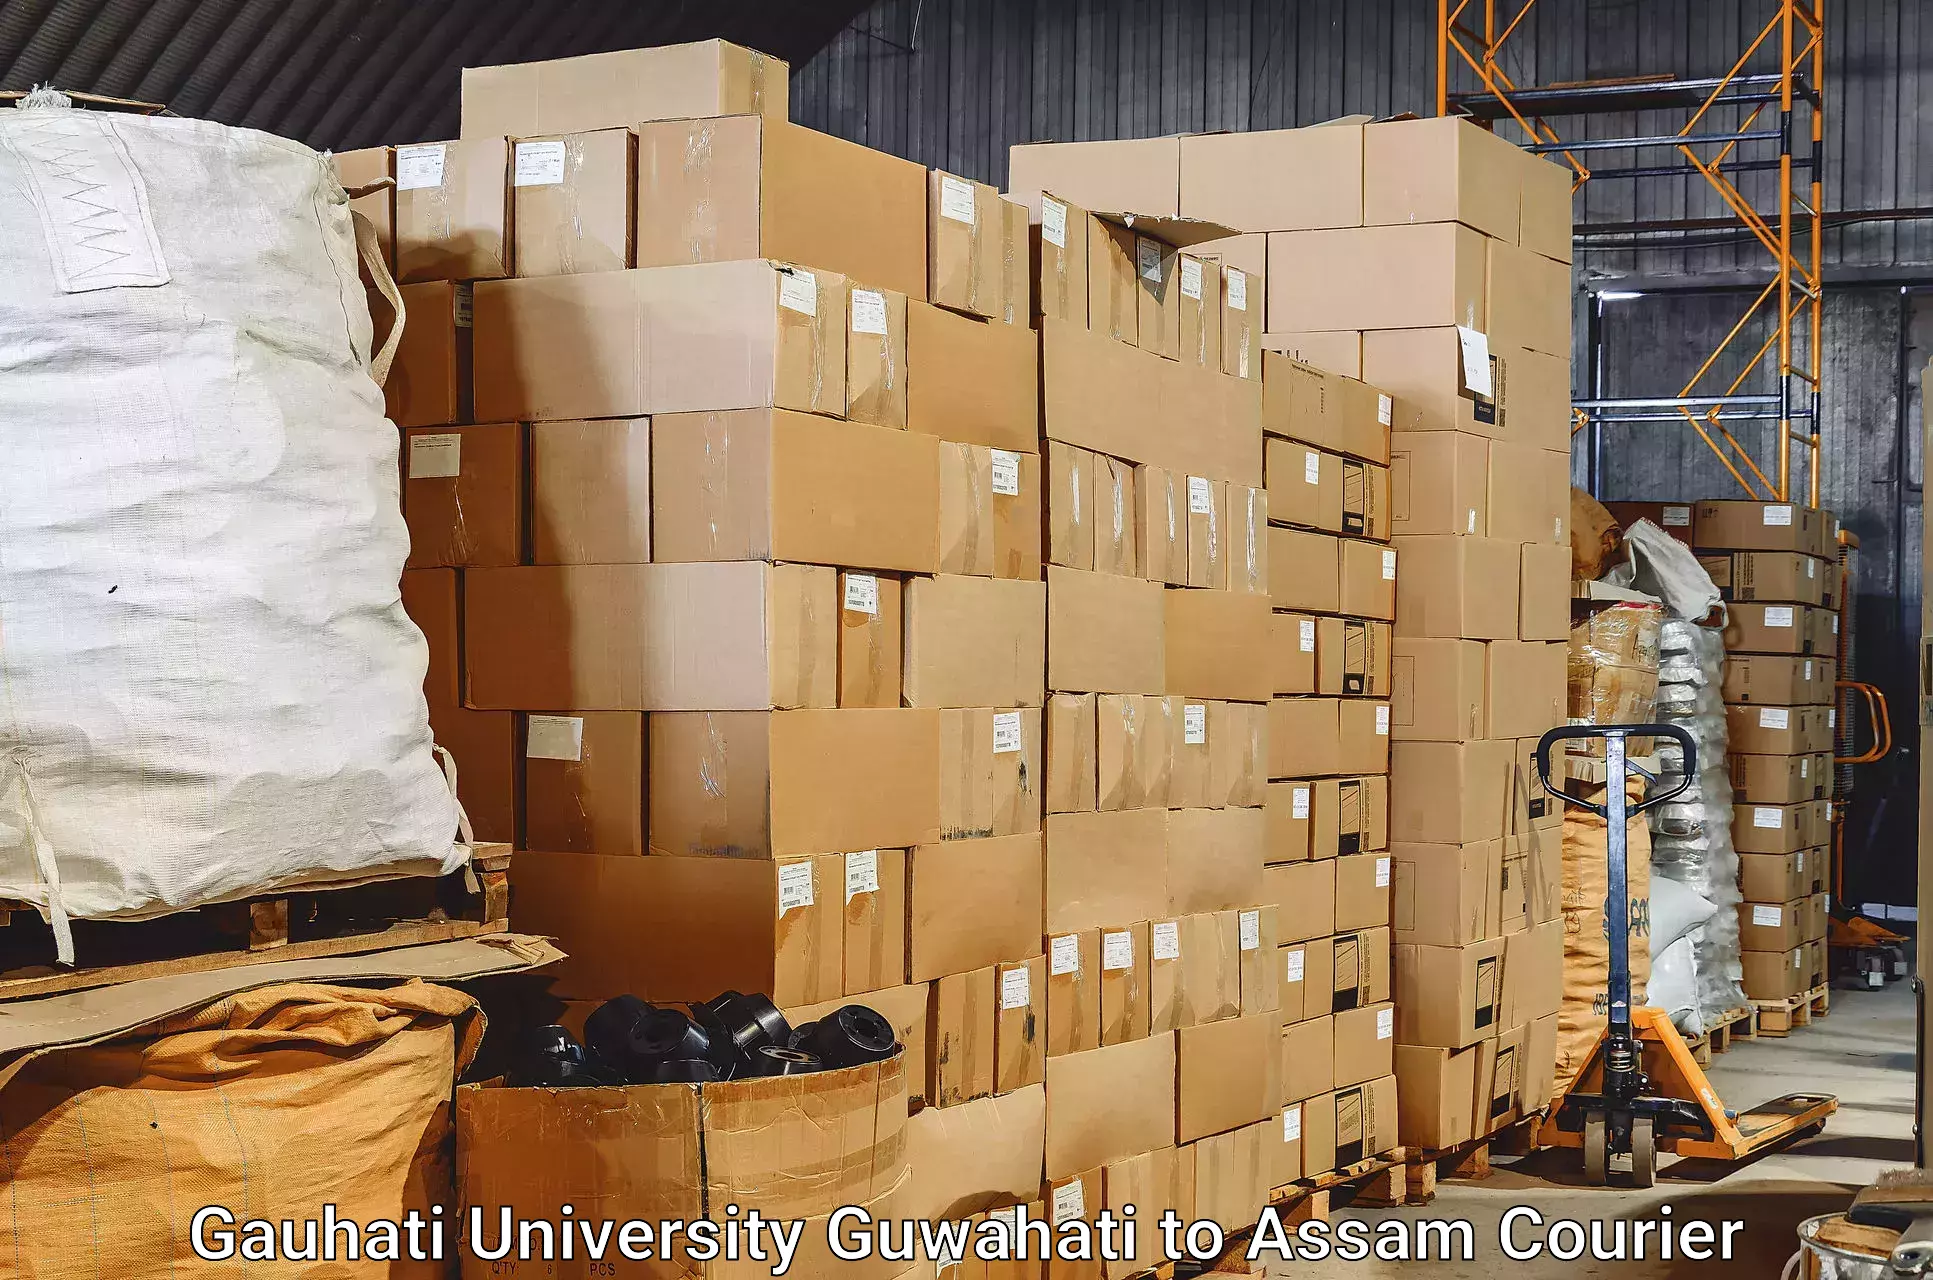 Baggage transport services Gauhati University Guwahati to Bokajan